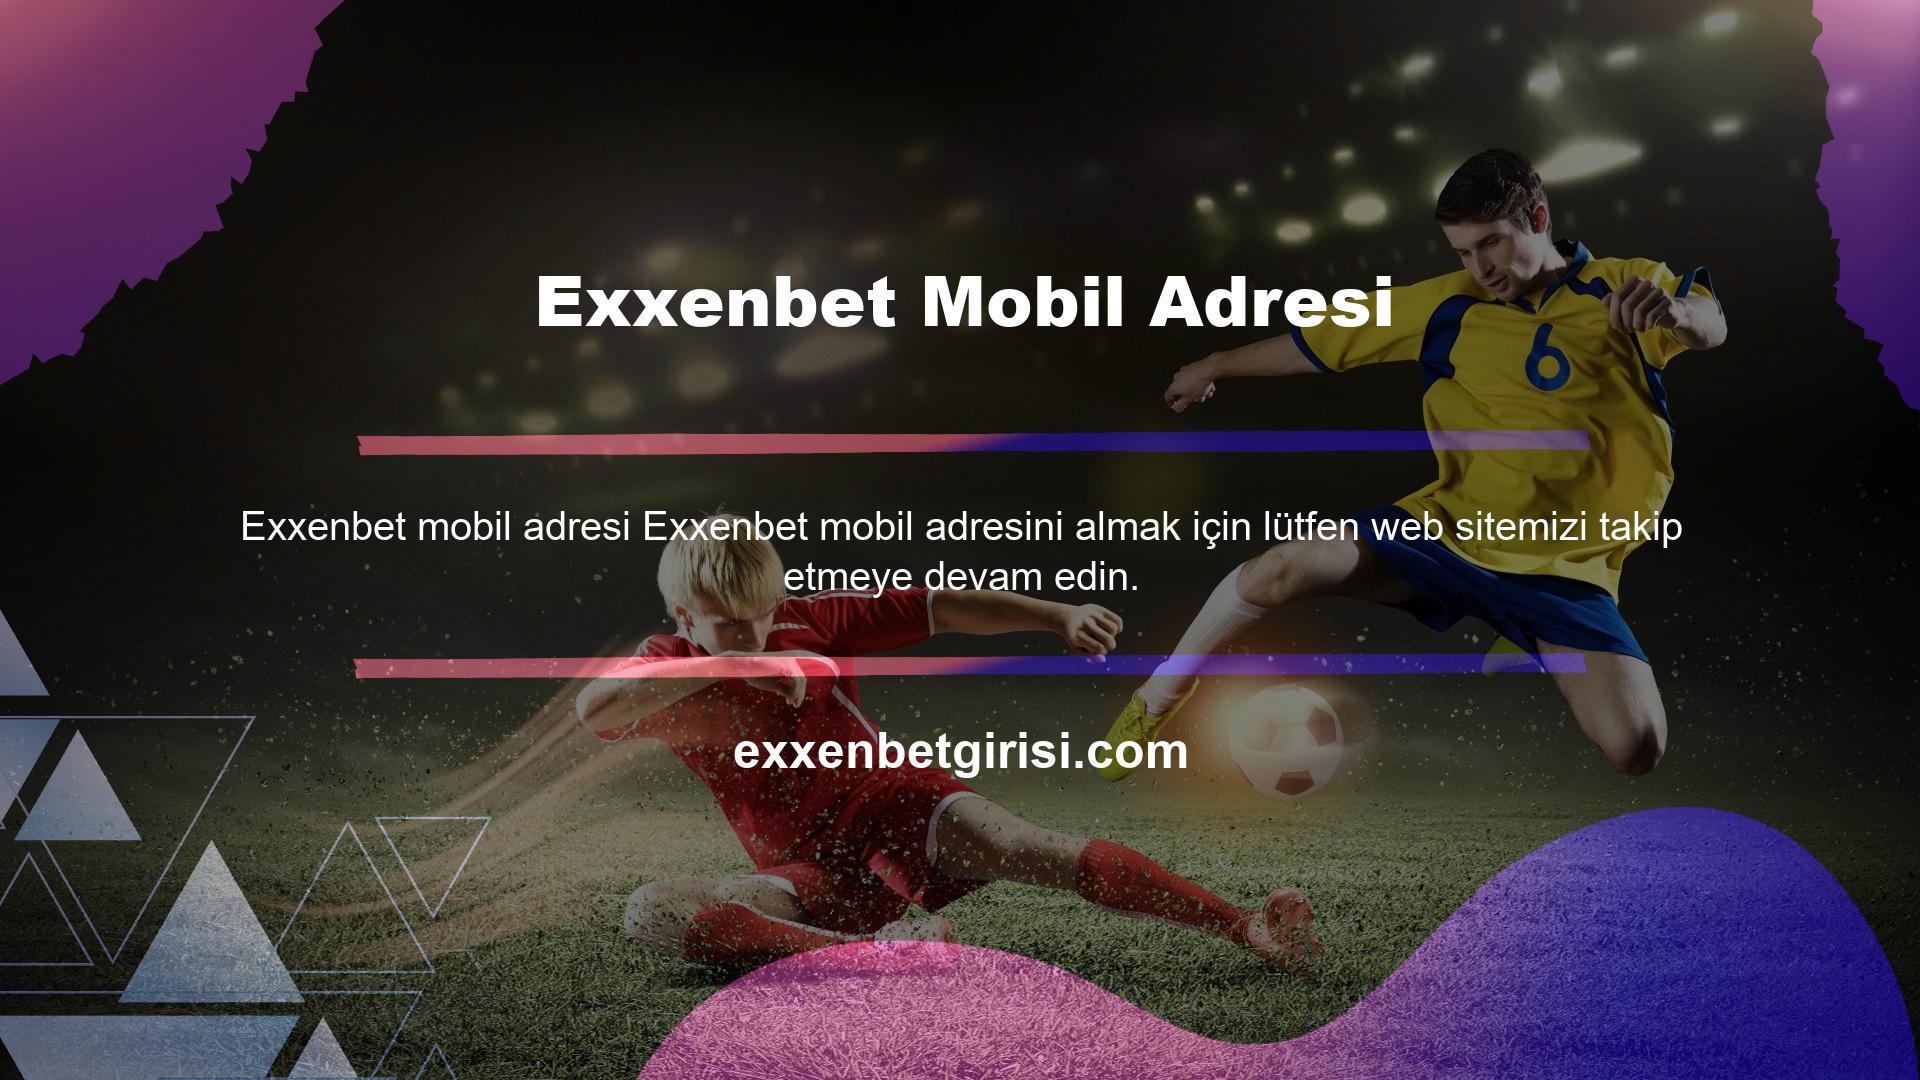 Exxenbet, popüler bahis dünyasında önemli bir üründür